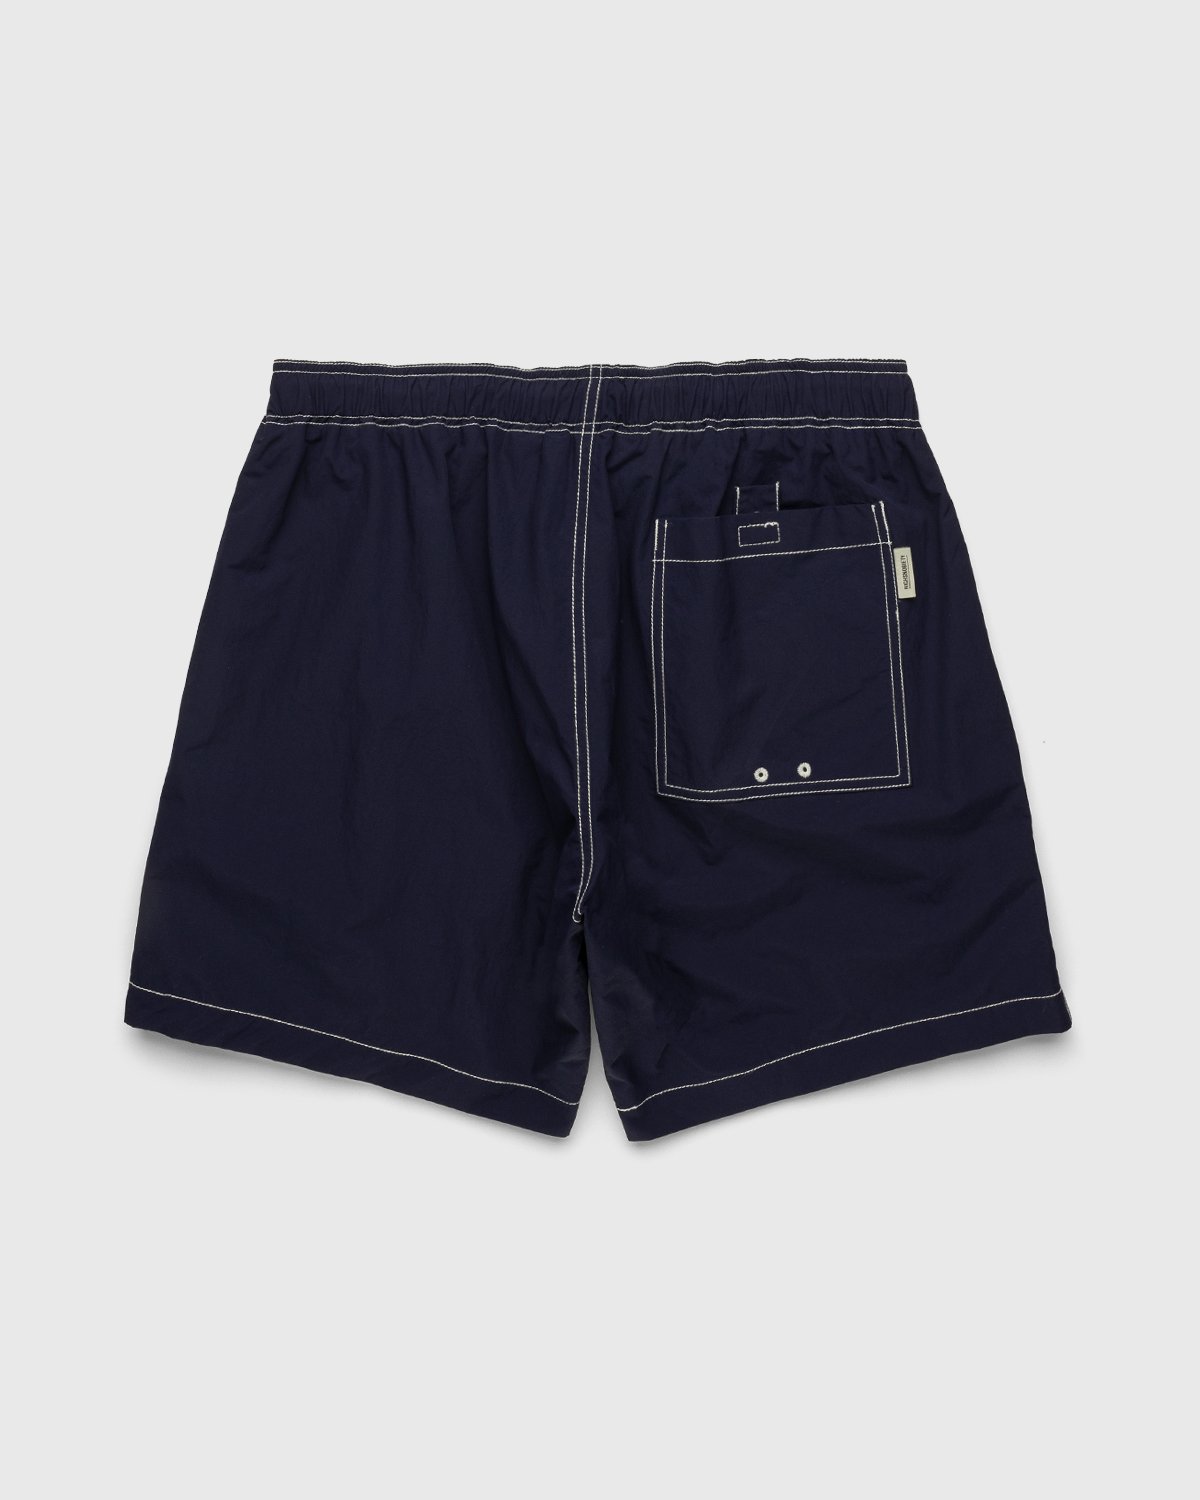 Highsnobiety - Contrast Brushed Nylon Water Shorts Navy - Clothing - Blue - Image 2